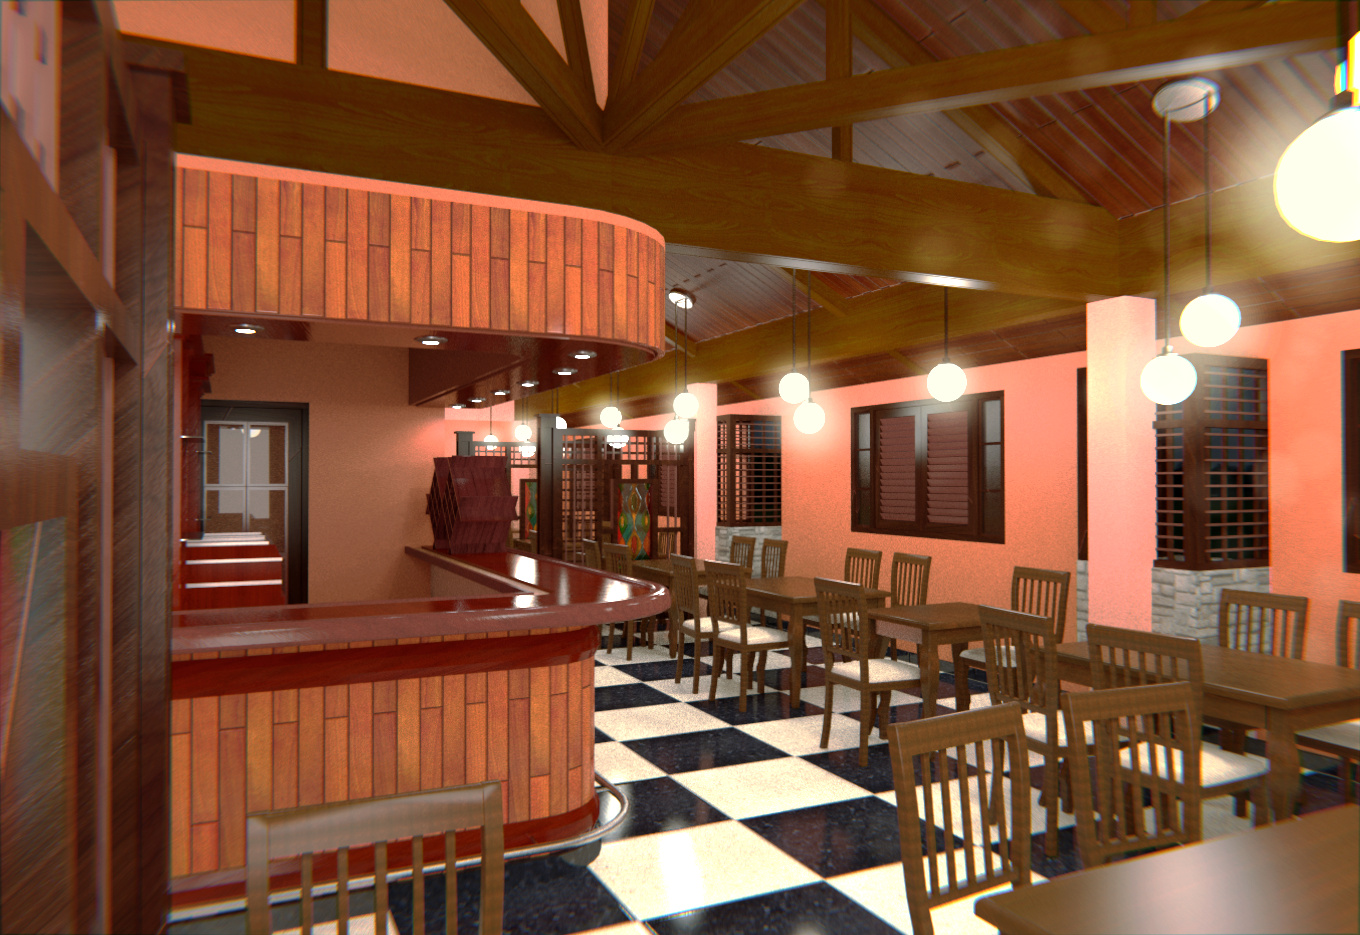 Mini Cafe Interior Scene | 3D model